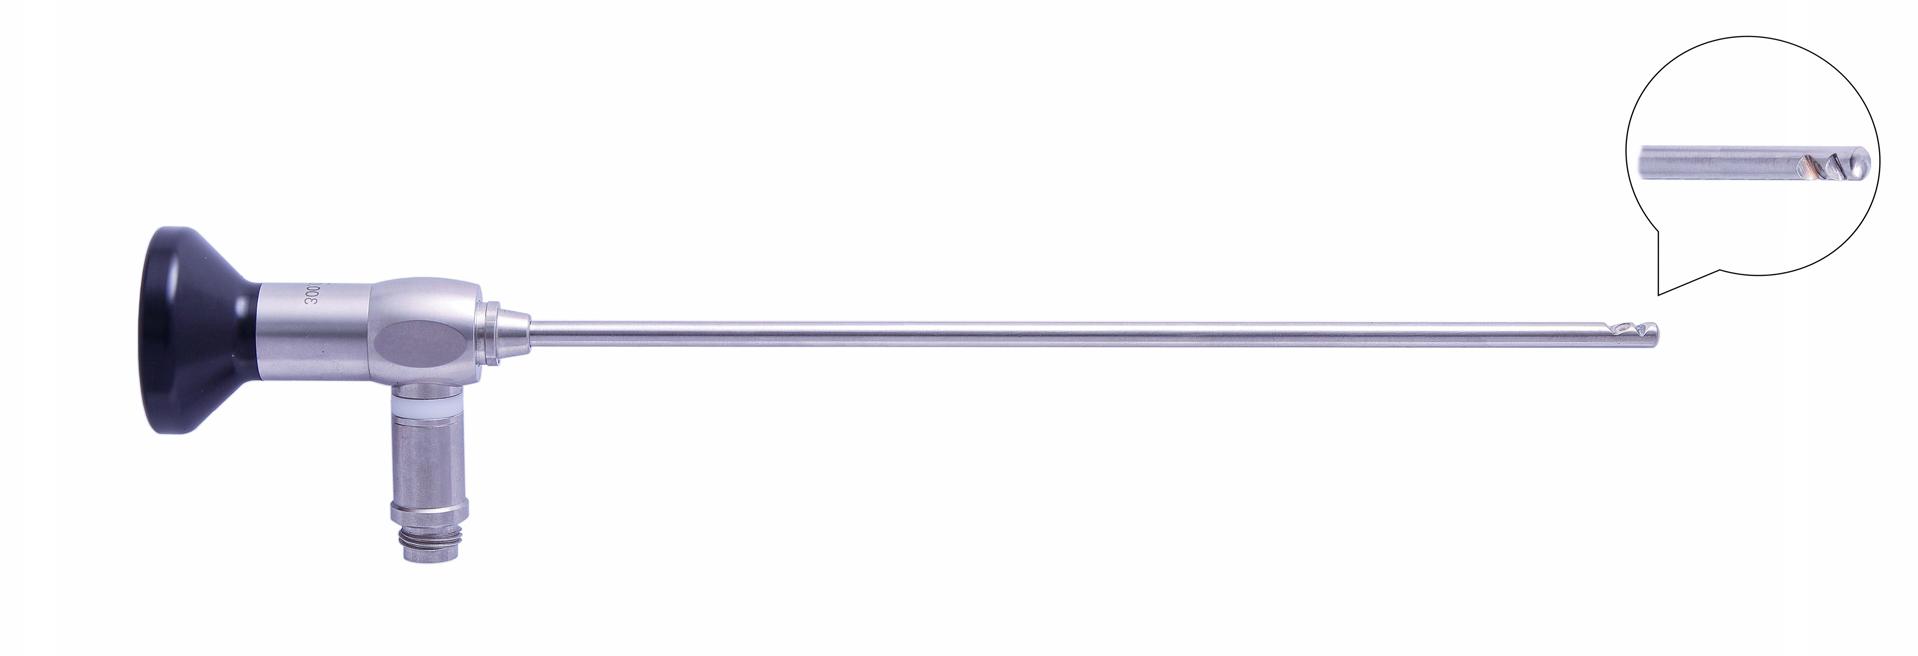 Трубка оптическая (артроскопическая, риноскопическая) ТОАР-016 диам. 4 мм, с углом наблюдения 70 гр. (до 110 гр.)